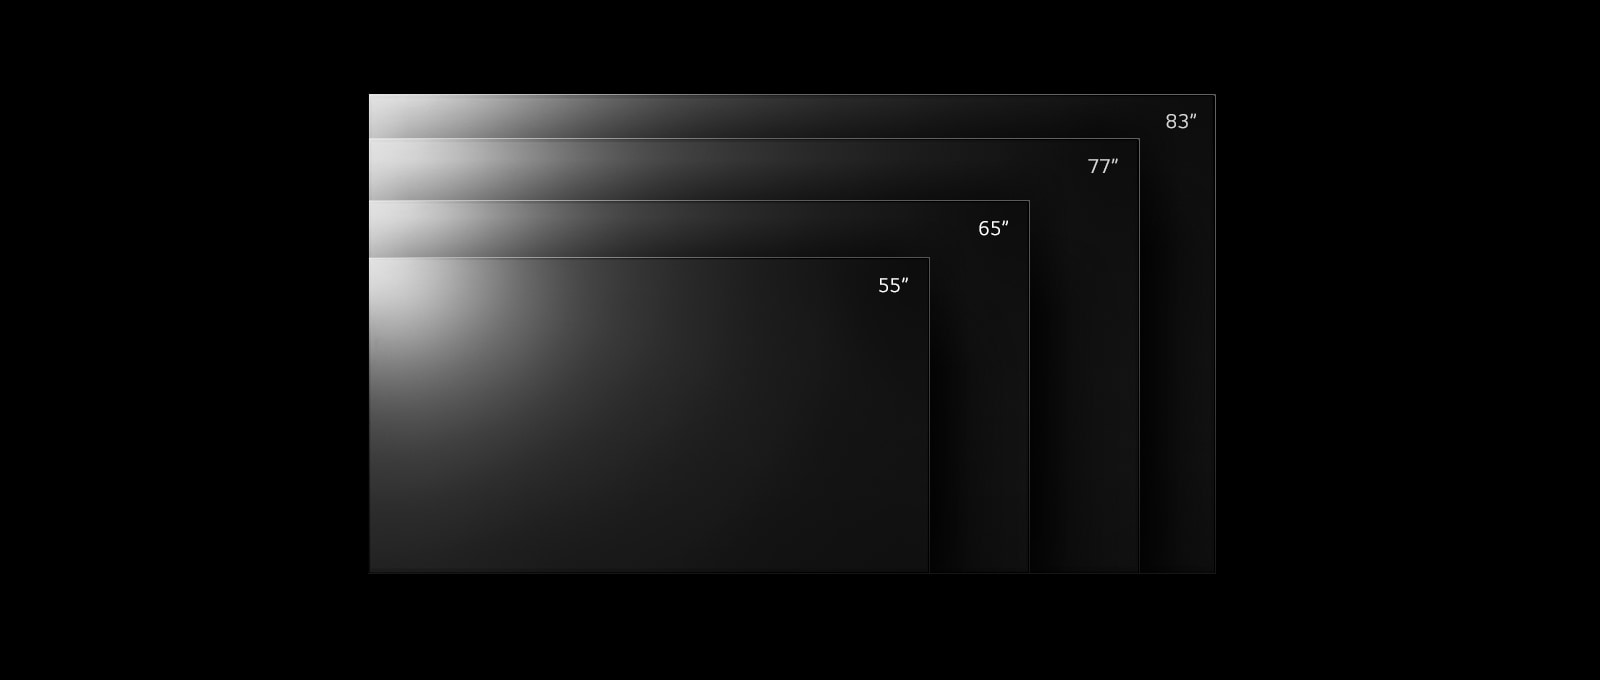 Paleta izdelkov serije LG OLED evo TV G2 v različnih velikostih od 55 palcev do 83 palcev